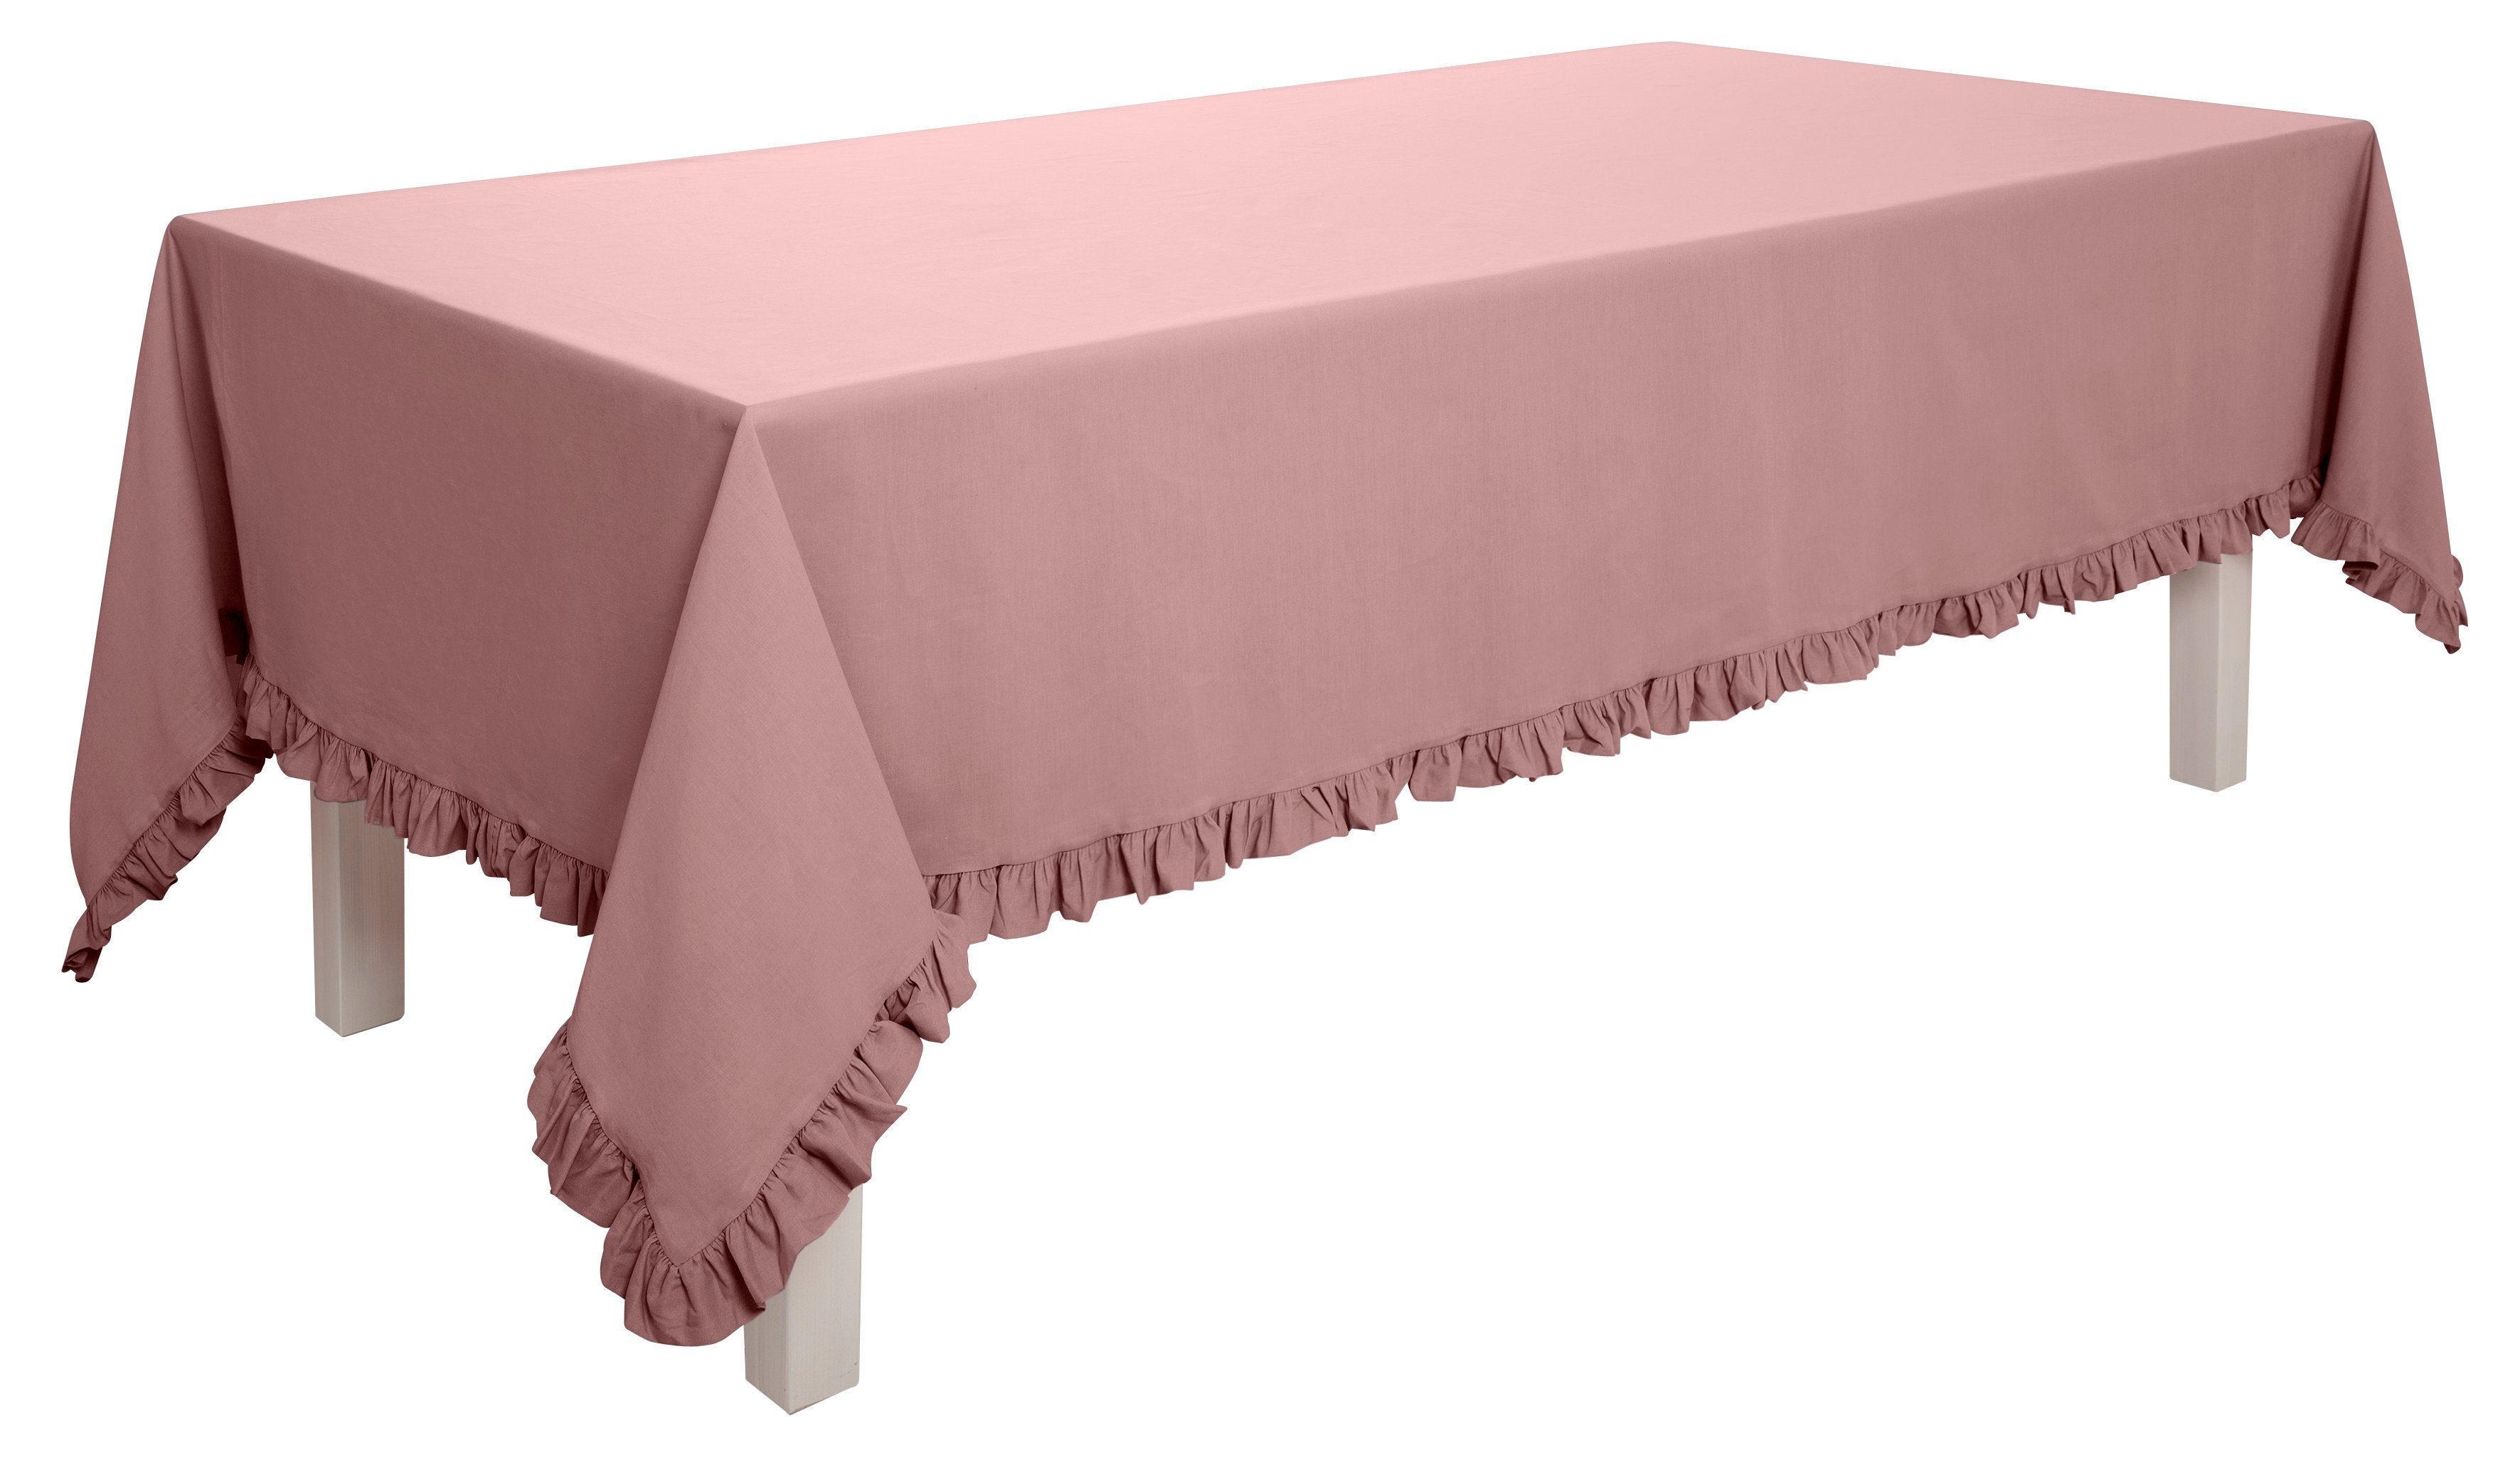 Tischdecke leichter Home ohne verwendbar mit Rüschen, Volants, Überwurf Tagesdecke rosé mit auch als affaire, Füllung, Baumwolle, 100% Violetta,